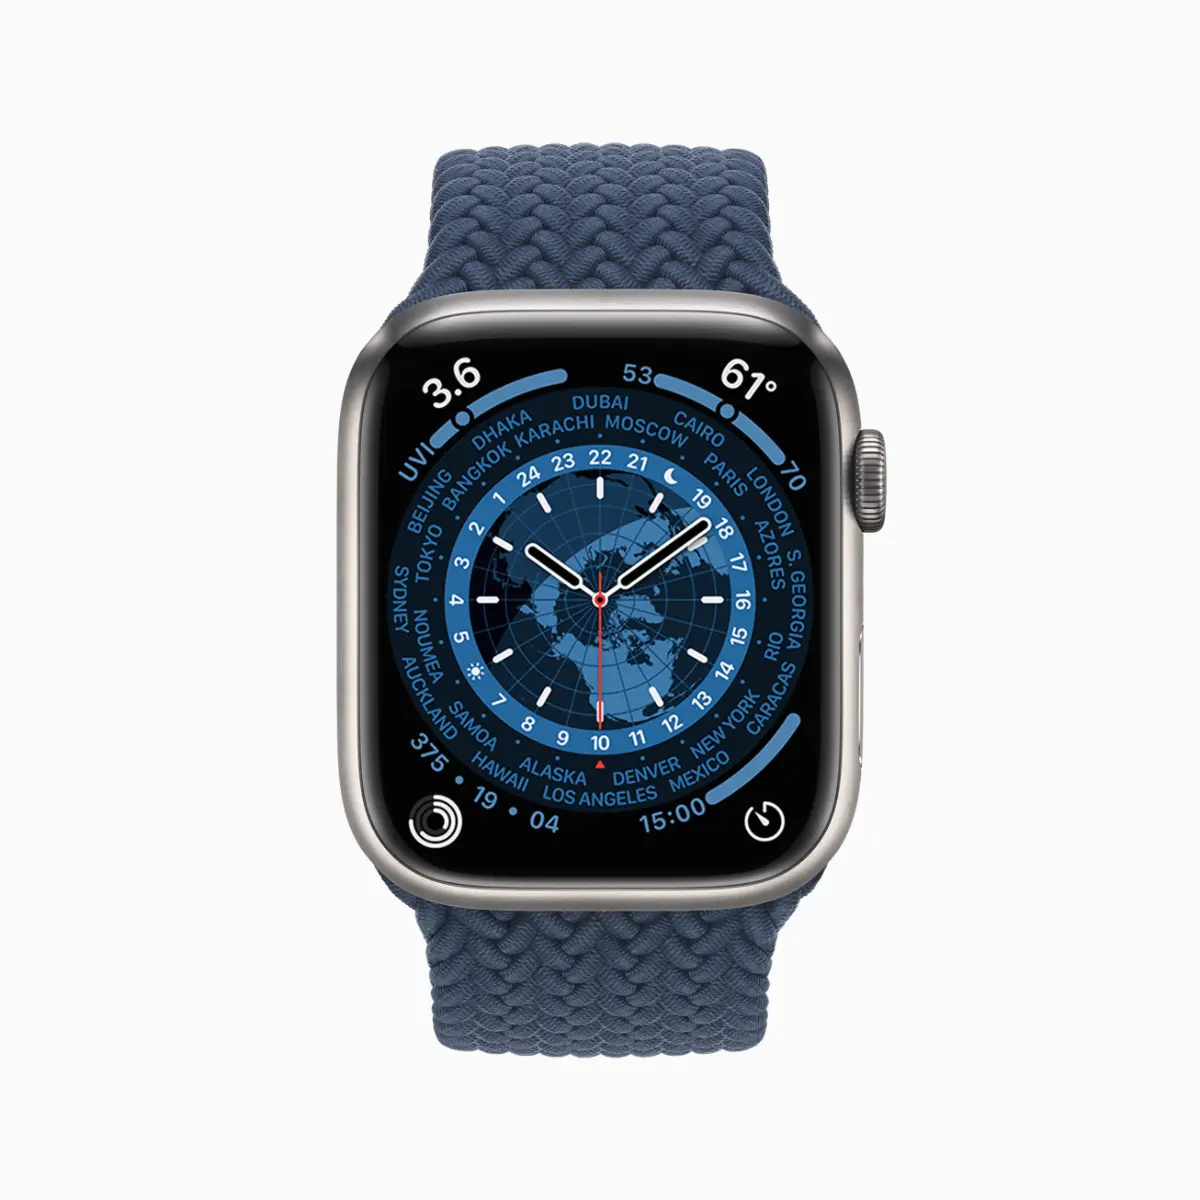 ontop.vn Apple watch series7 contour face 09142021Apple watch series7 world time face 09142021